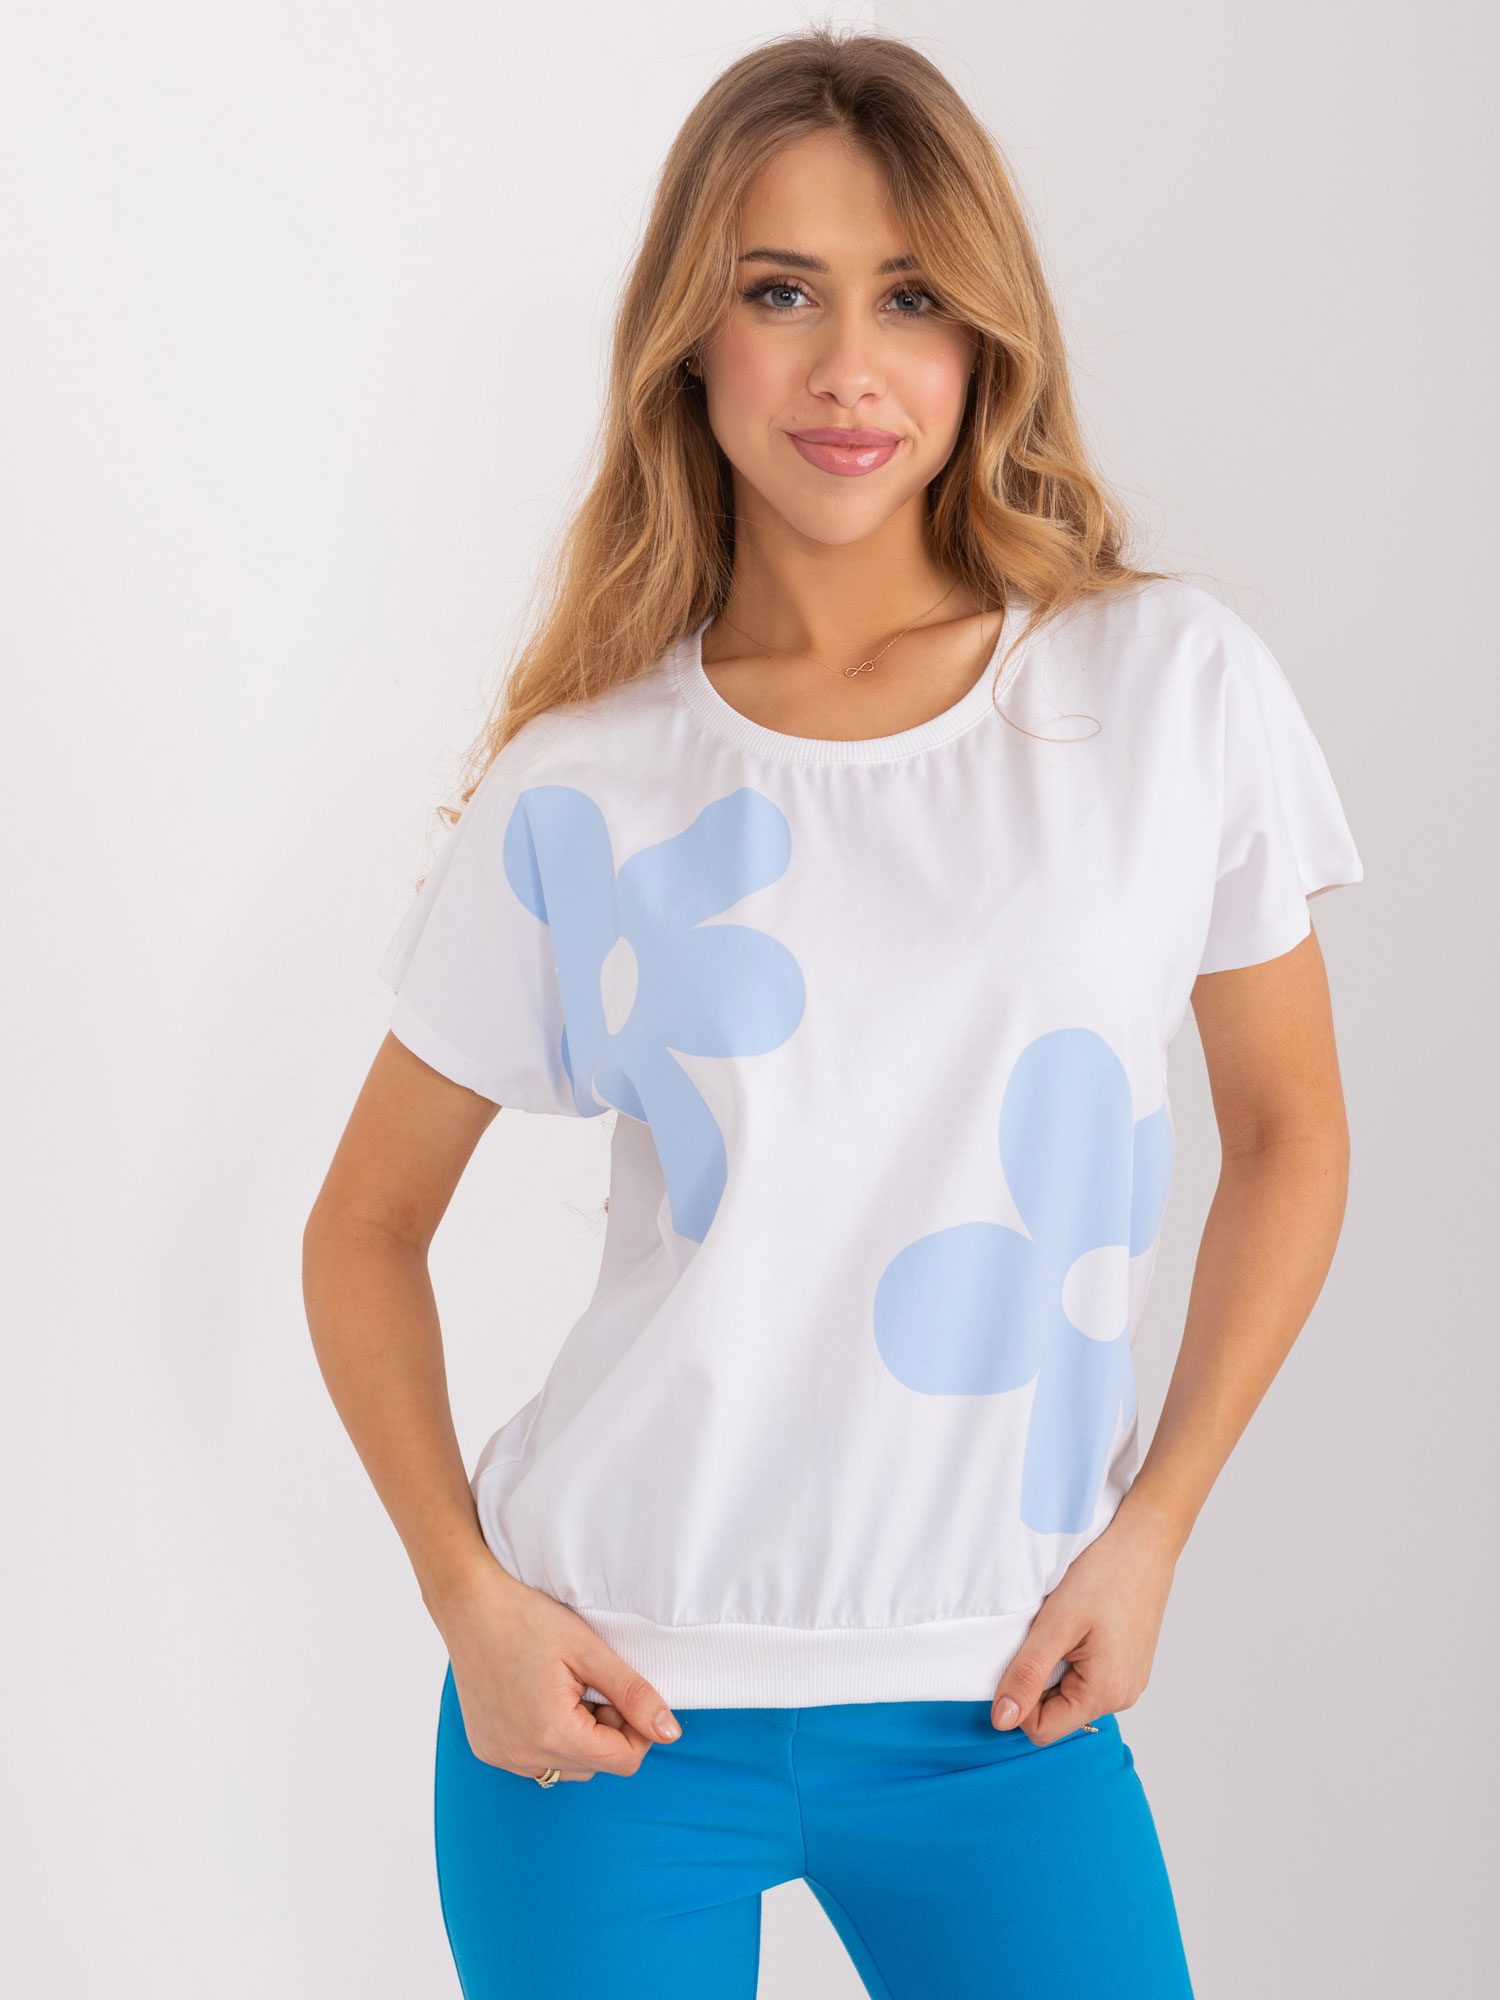 Bílo-modré tričko s aplikací RV-BZ-9628.26X-white-blue Velikost: L/XL